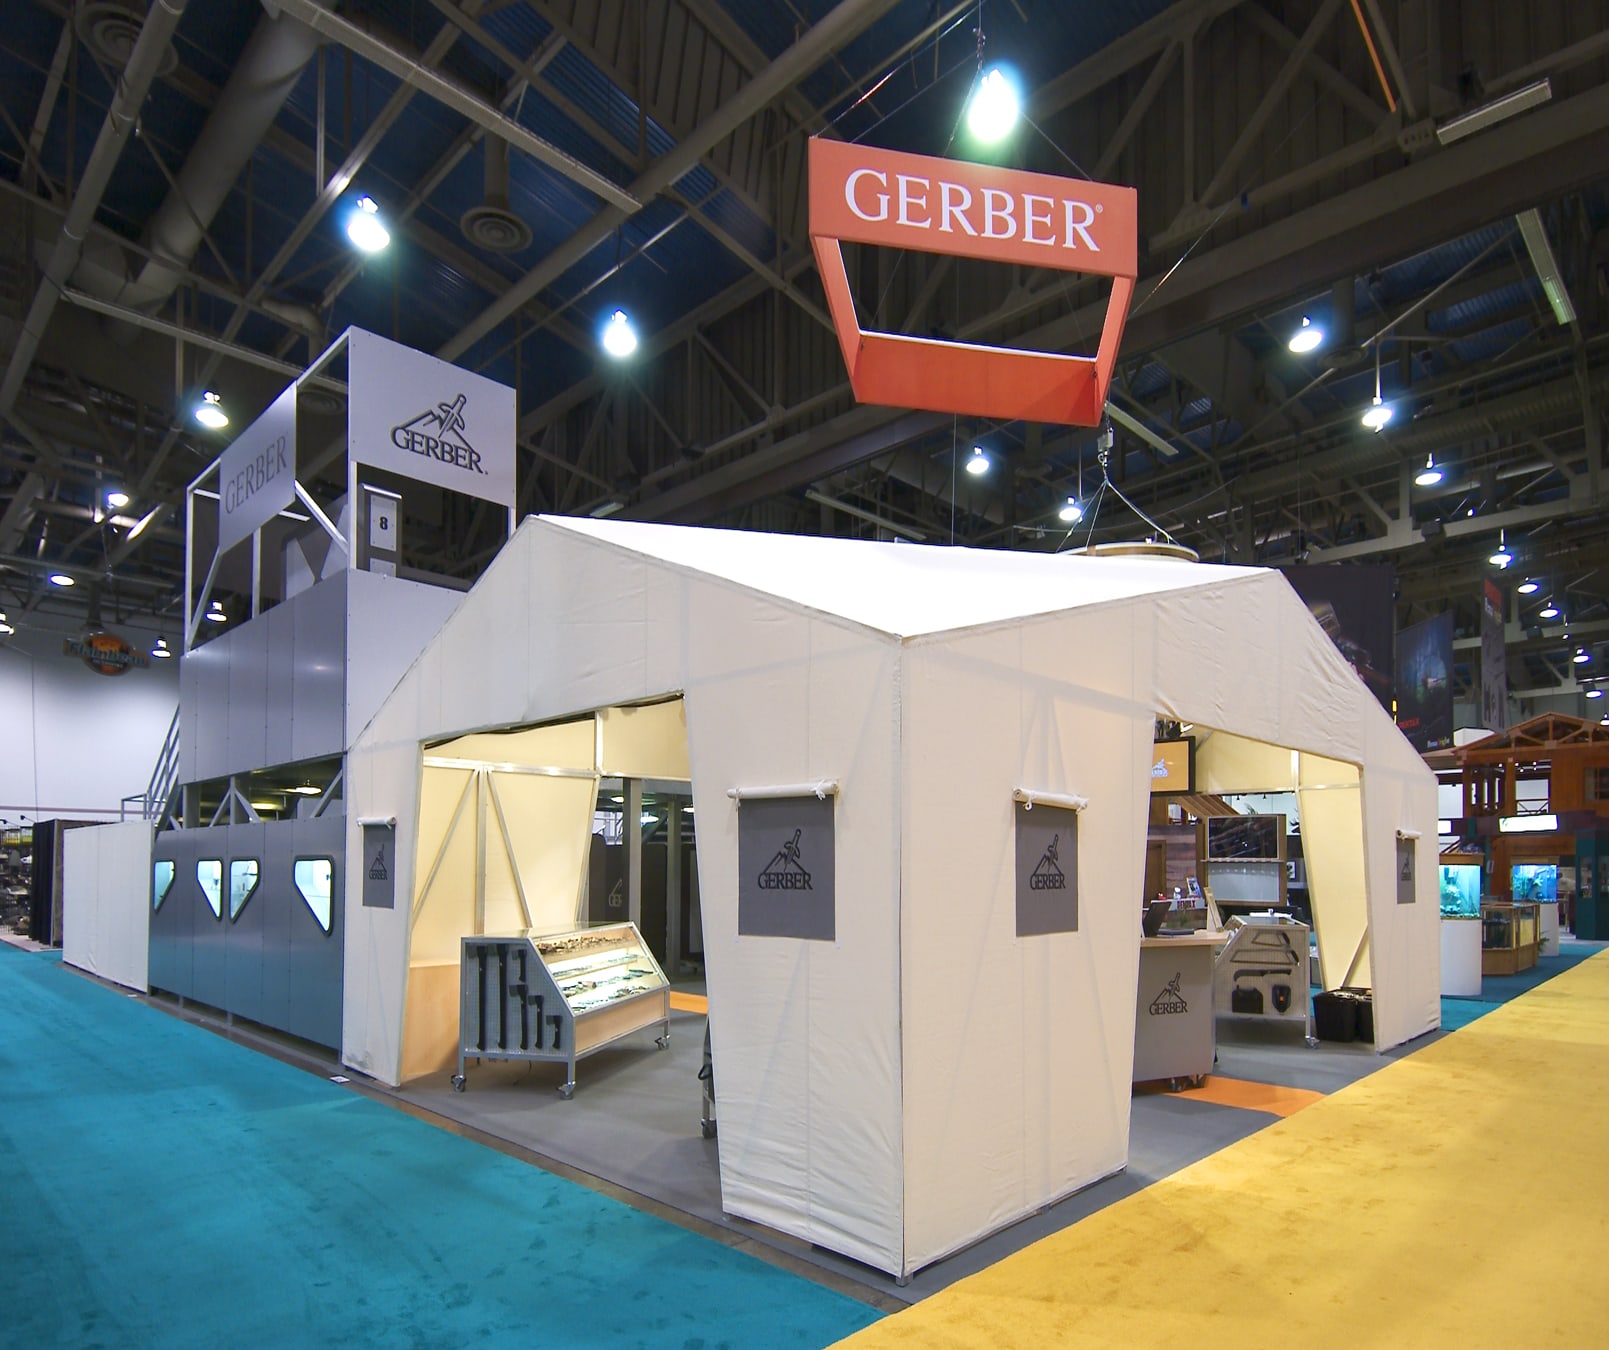 Gerber trade show exhibit design - front wide view